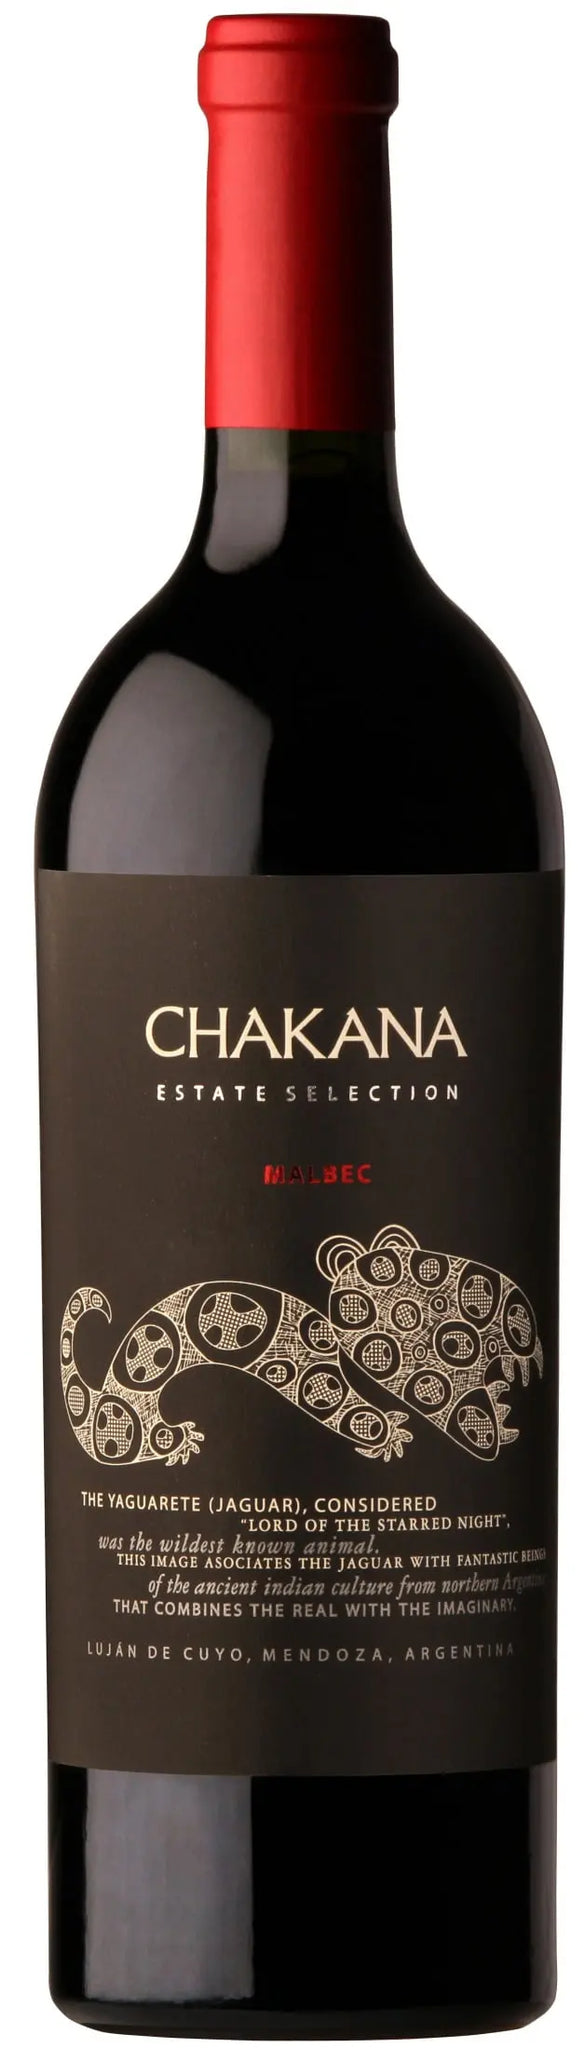 Chakana Estate Selection Malbec 2020 (1x75cl) - TwoMoreGlasses.com